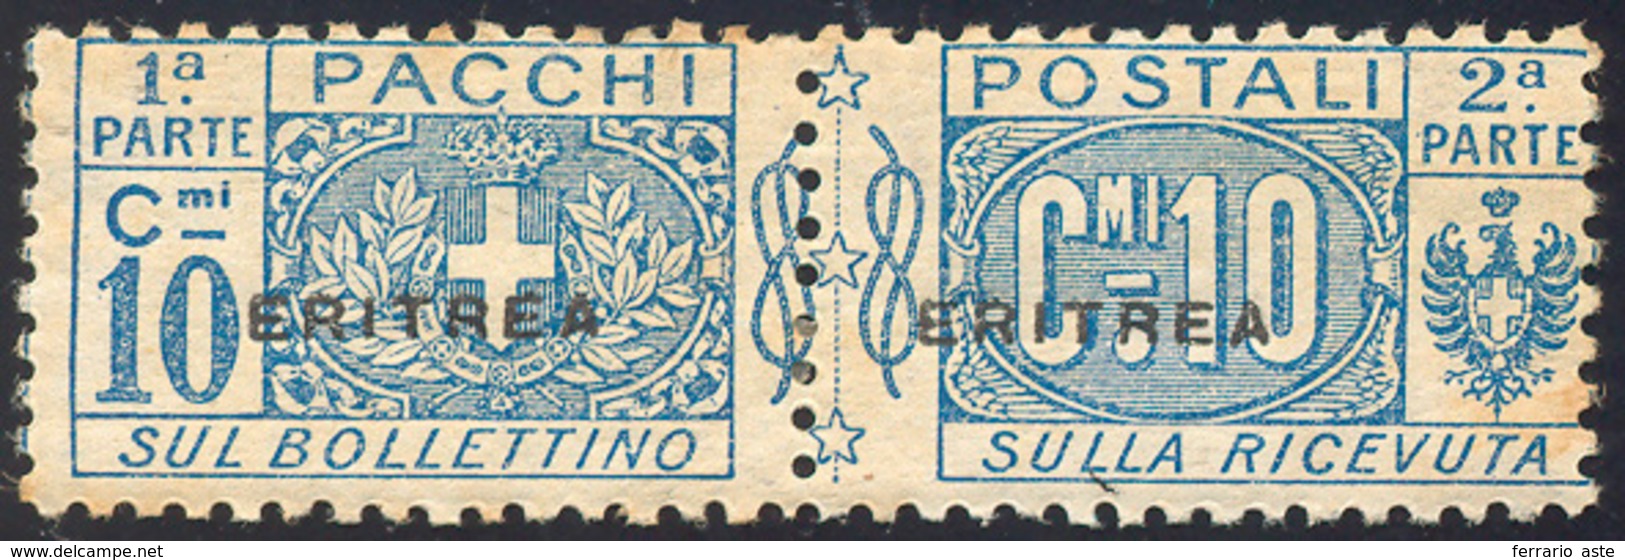 2459 PACCHI POSTALI 1916 - 10 Cent. Nodo Di Savoia, Soprastampa Piccola (2), Gomma Originale, Perfetto, L... - Eritrea